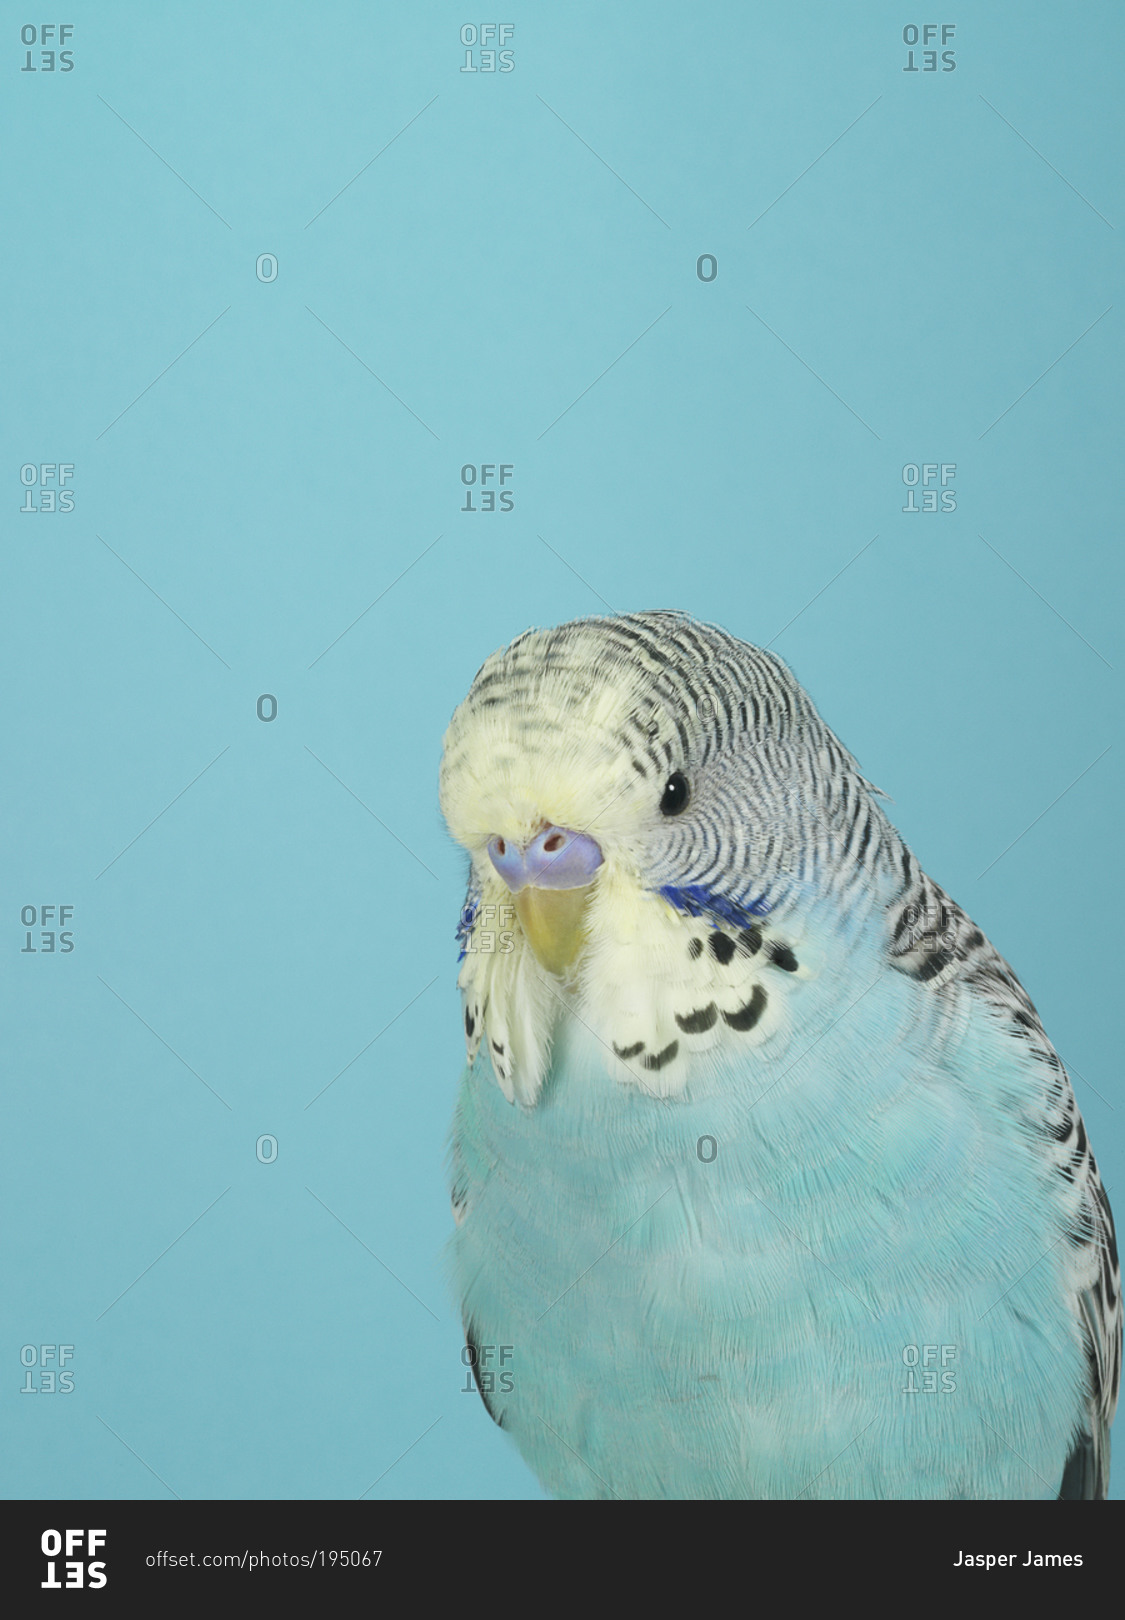 A blue parakeet